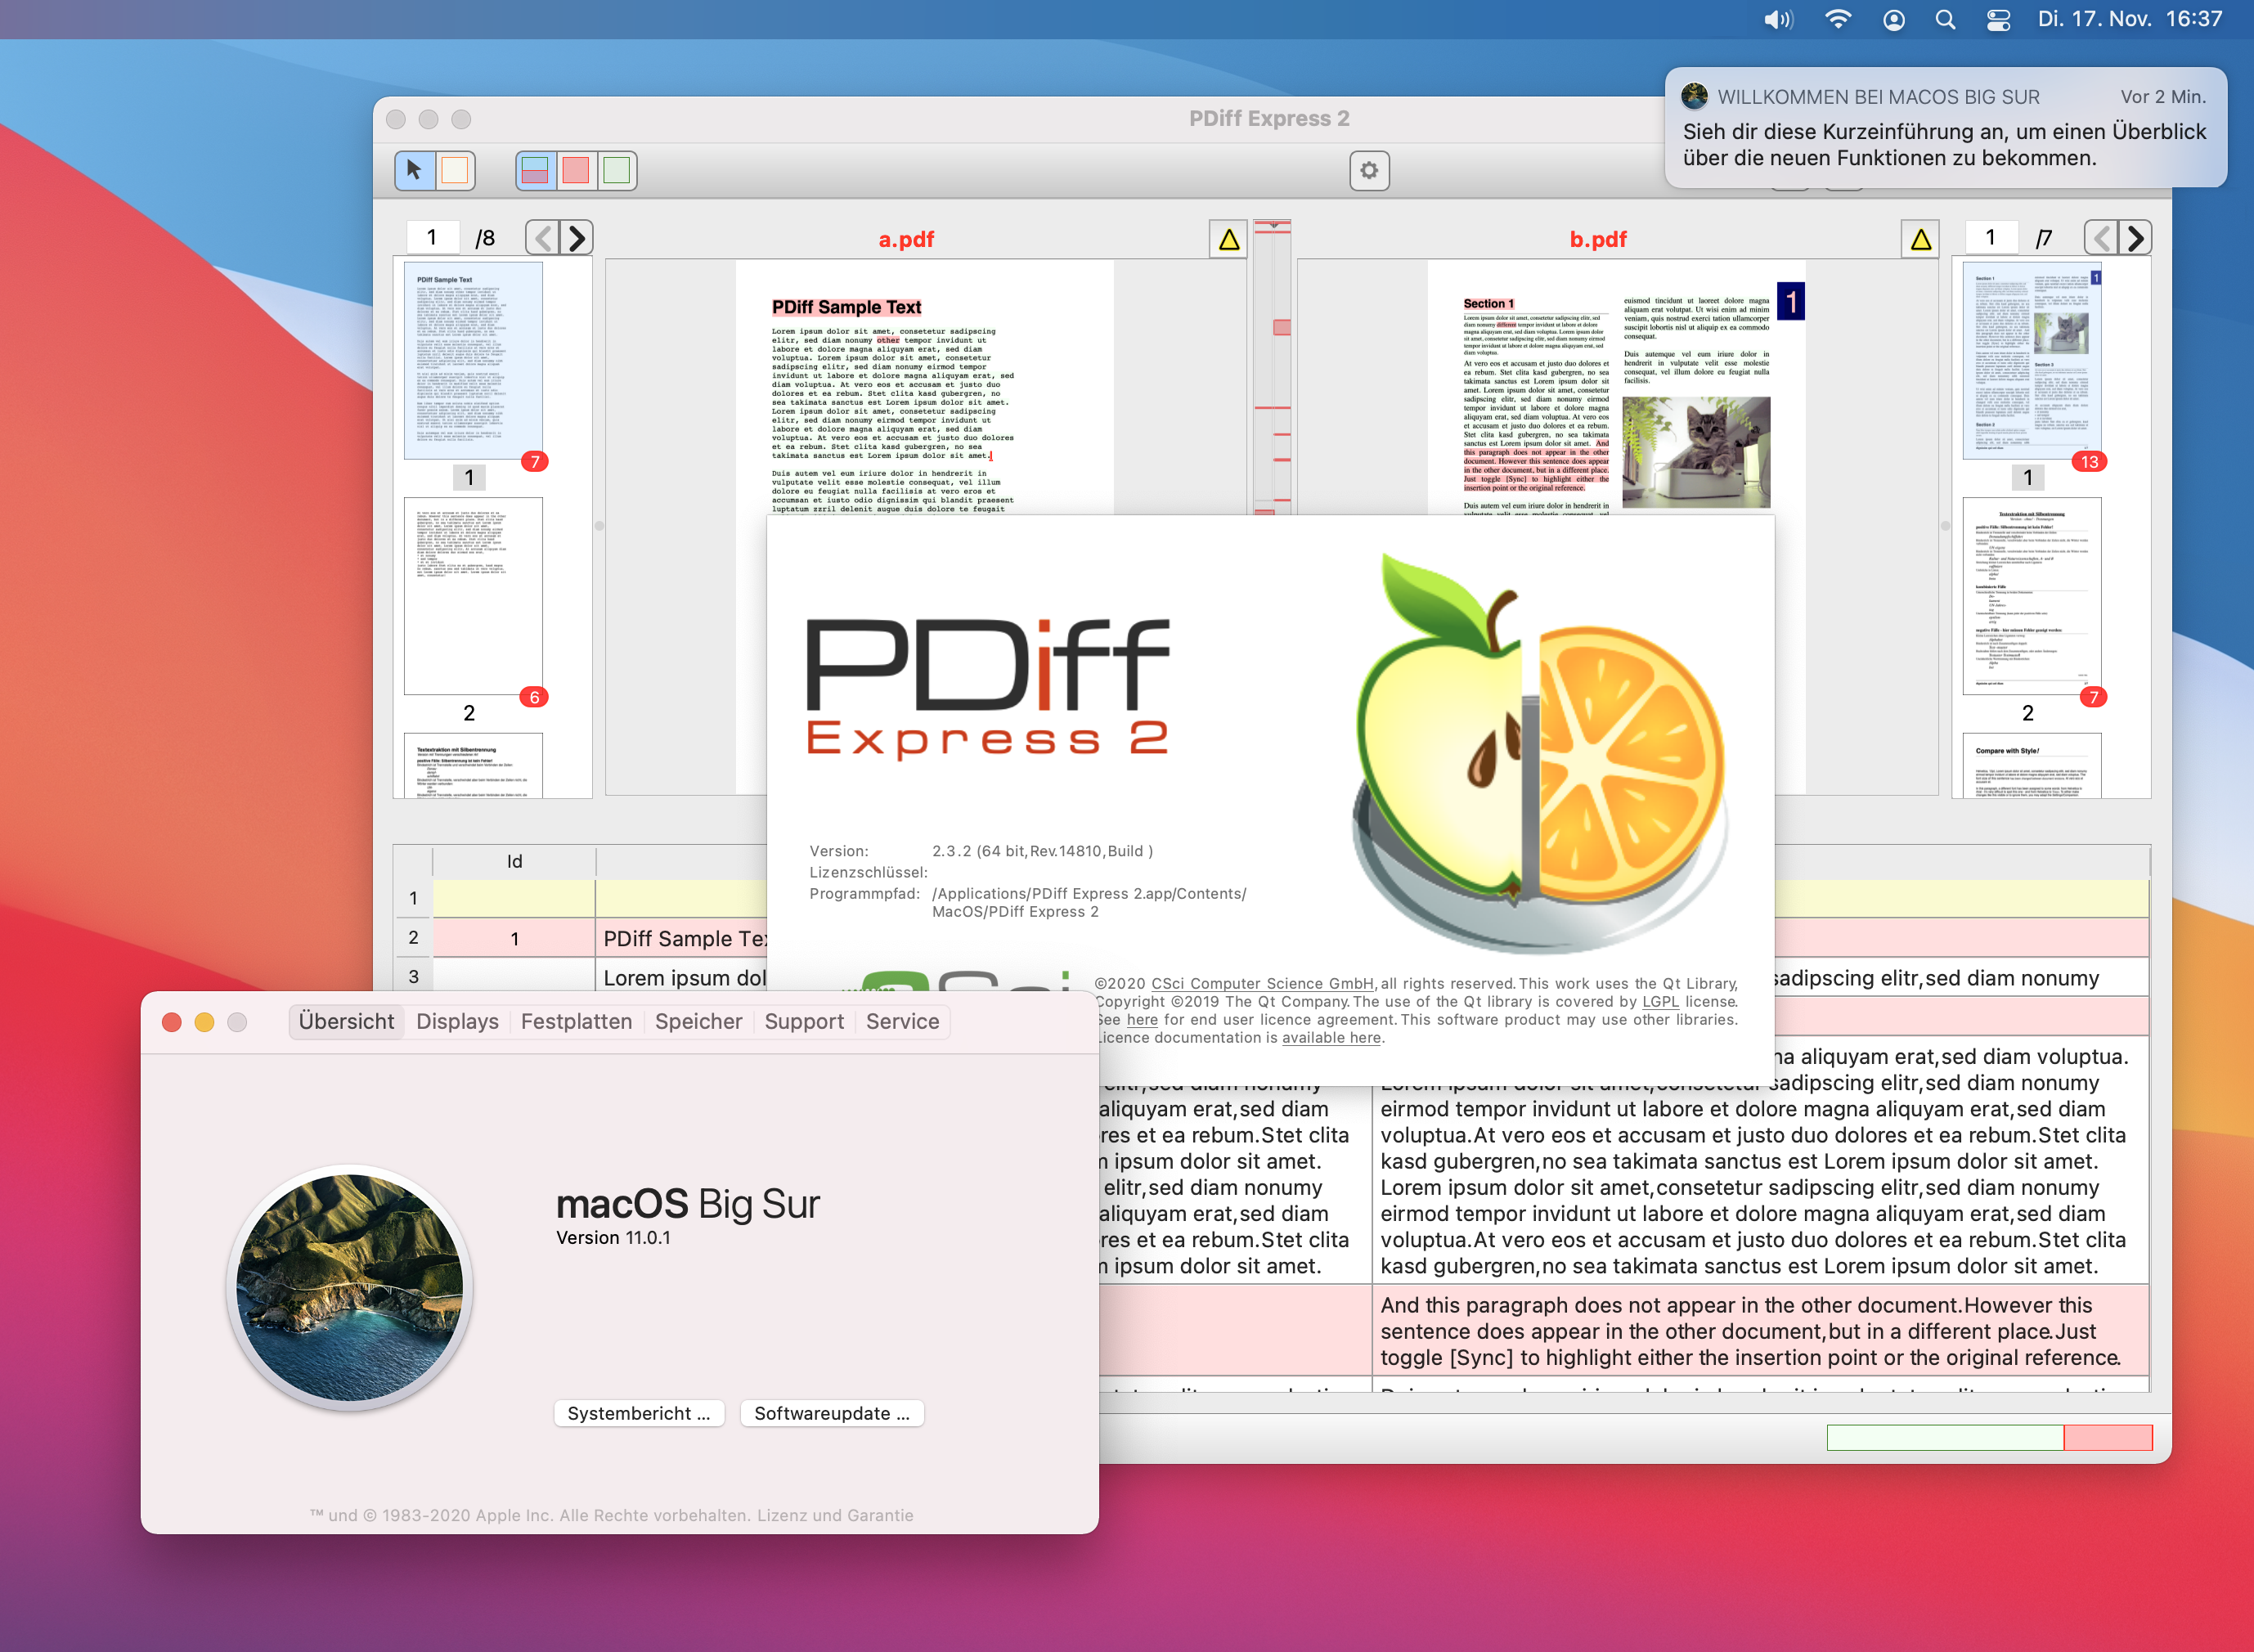 PDF vergleichen mit PDiff Express unter macOS 11 Big
Sur